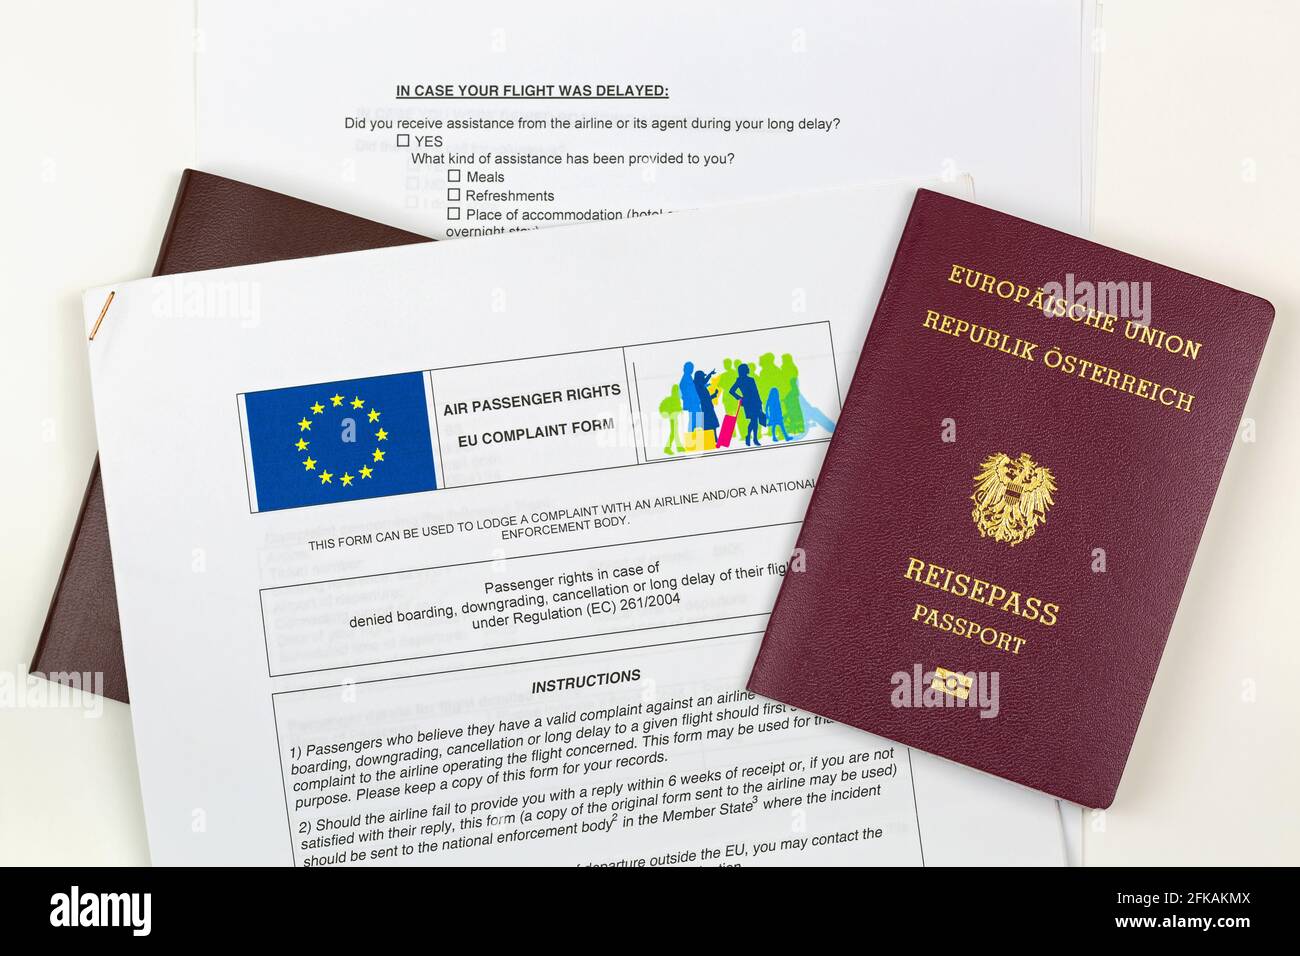 MUNICH, ALEMANIA - 2016 DE OCTUBRE: Pasaporte electrónico austriaco en el formulario de queja de la UE en el aeropuerto de Munich, Alemania, el 23 de octubre de 2016. Los pasajeros pueden Foto de stock